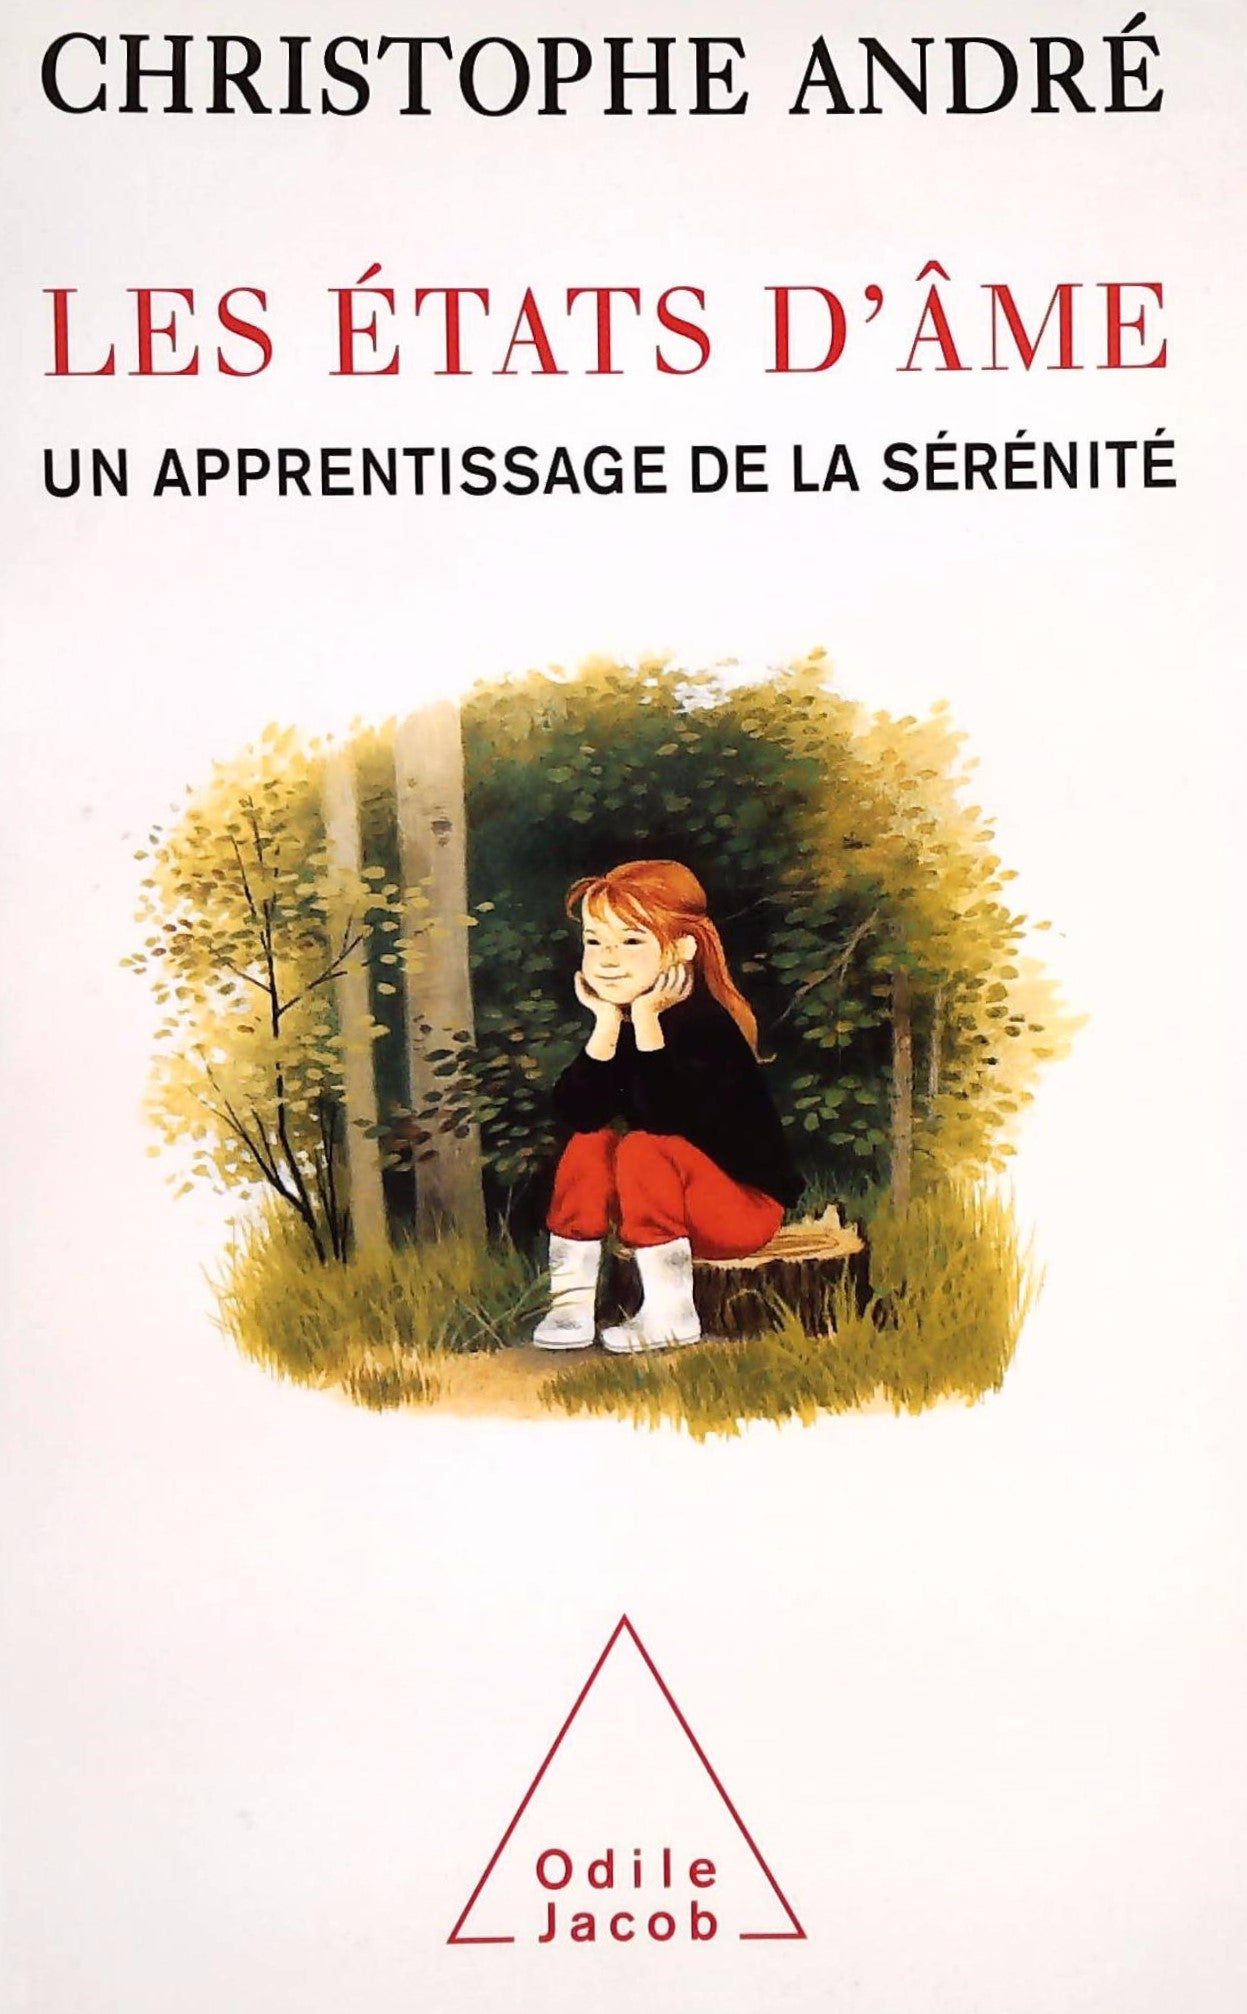 Livre ISBN 2738119433 Les états d'âme, un apprentissage de la sérénité (Christophe André)